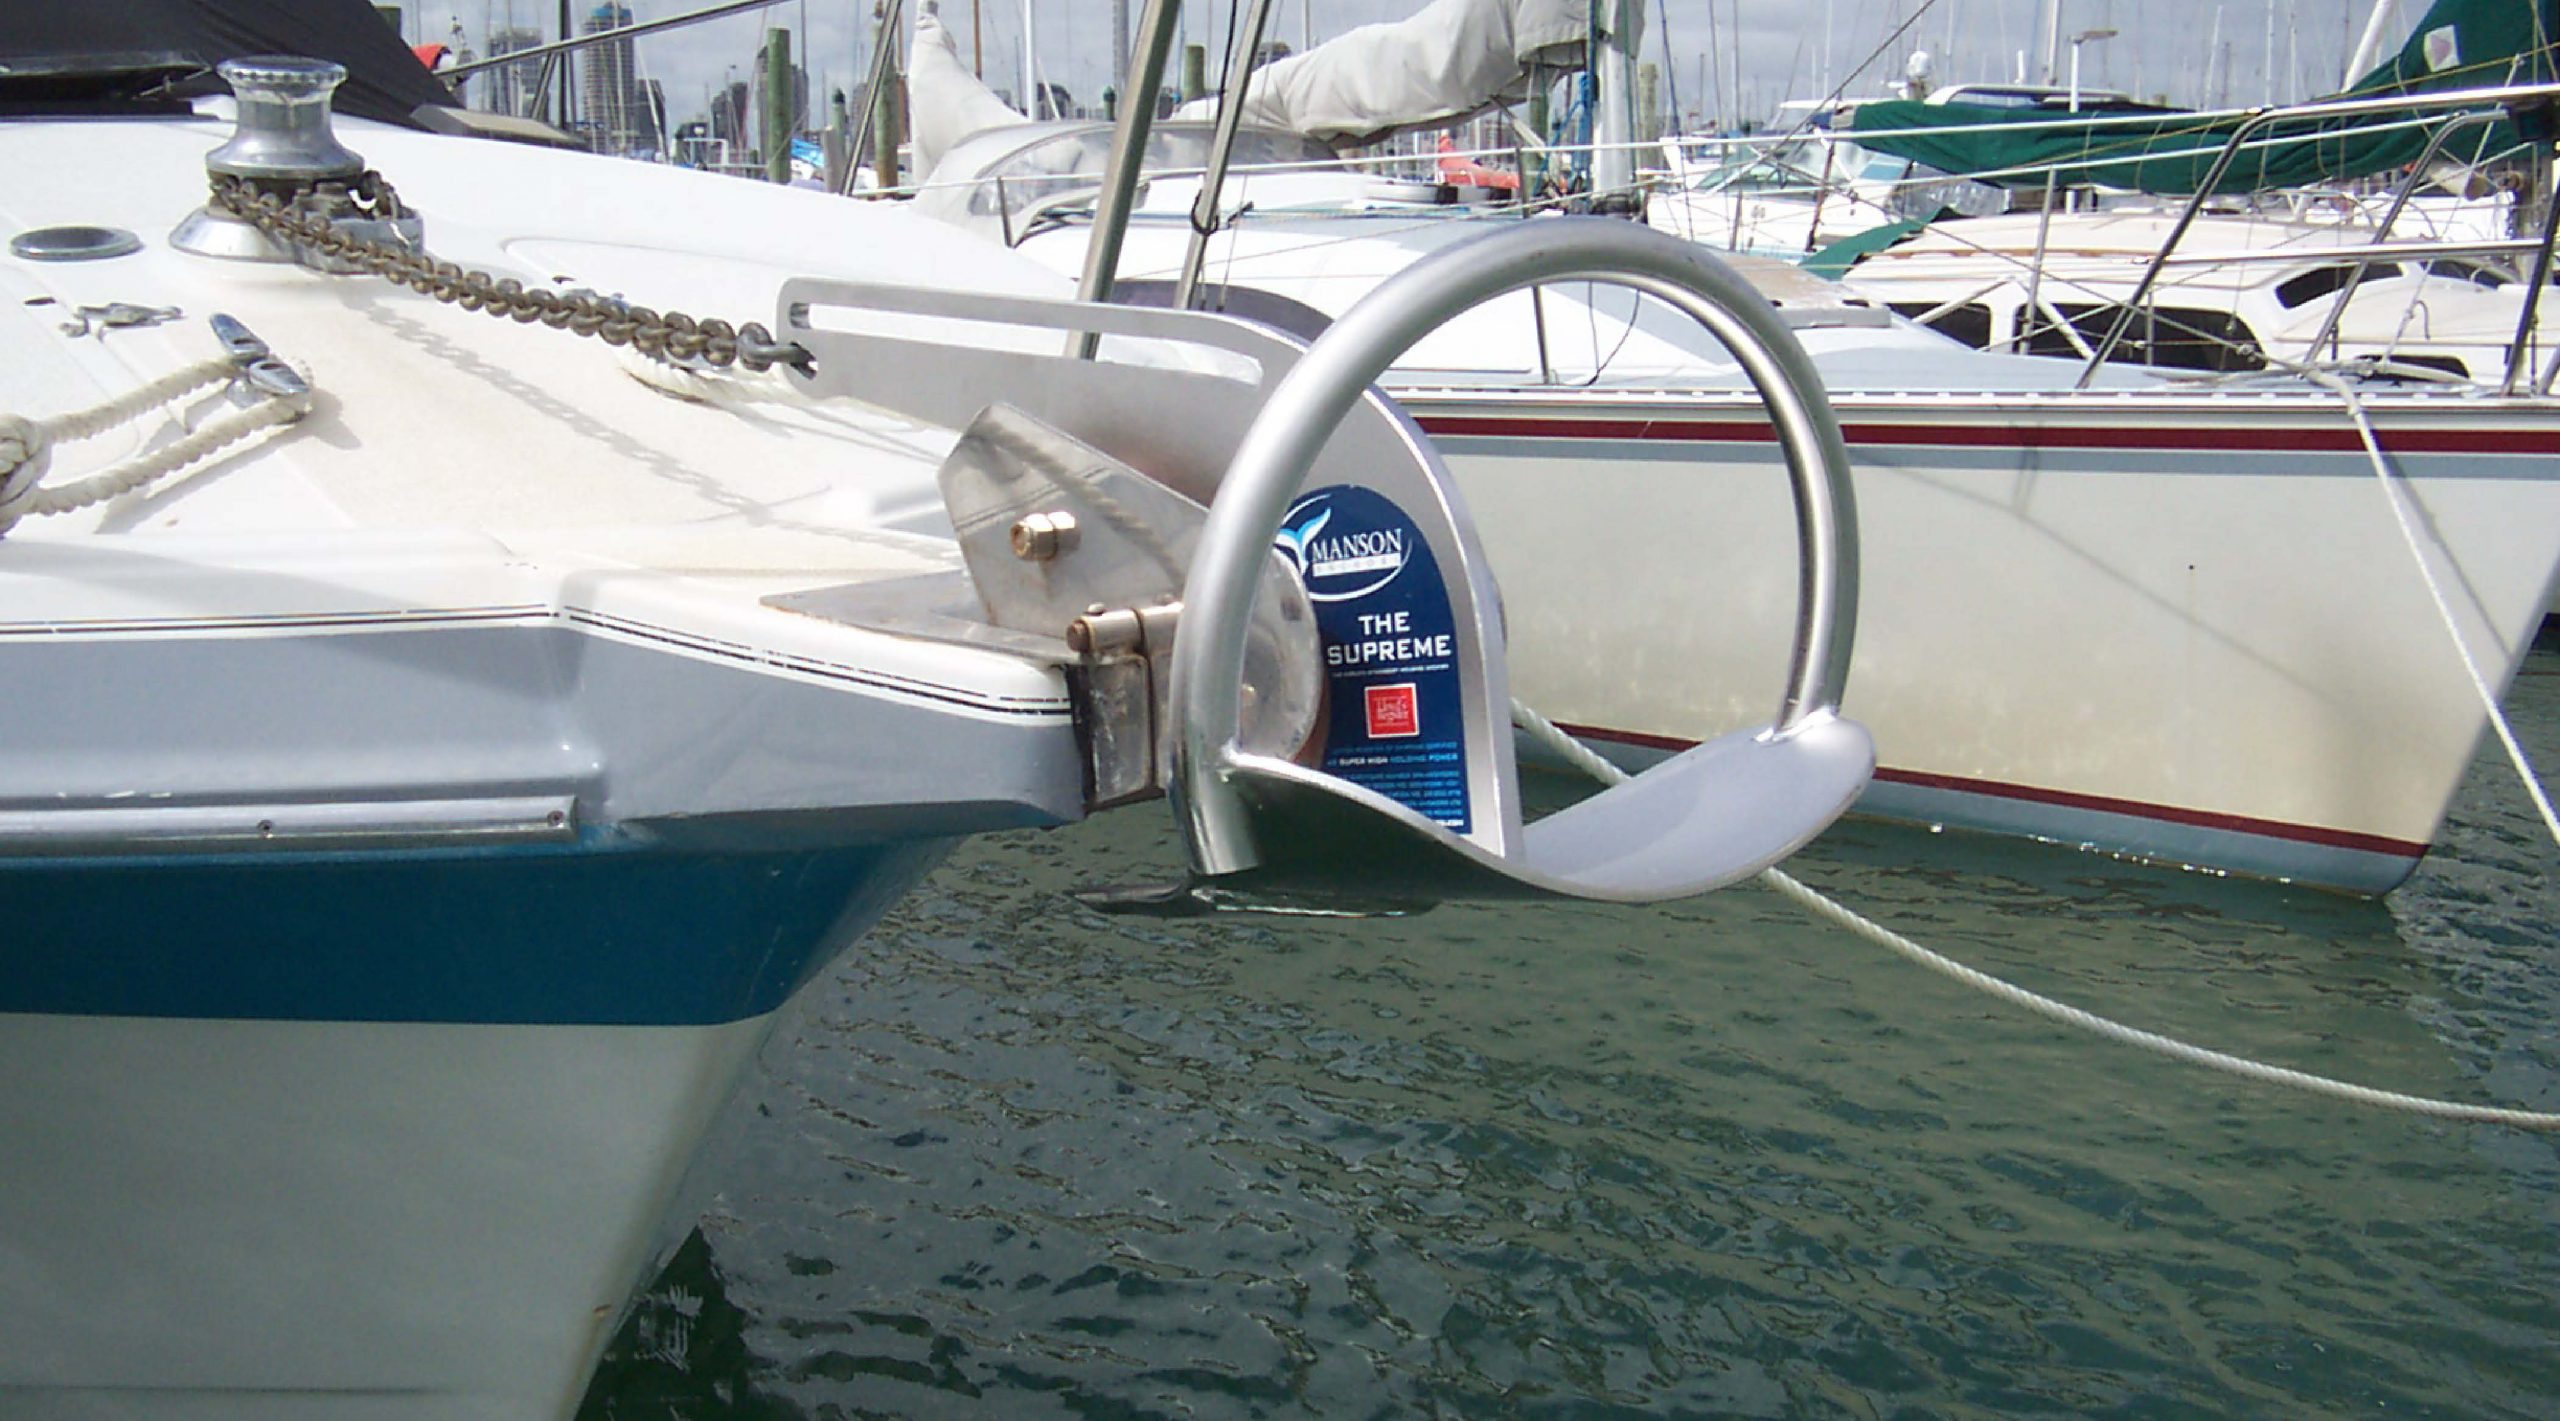 sailboat anchor size chart